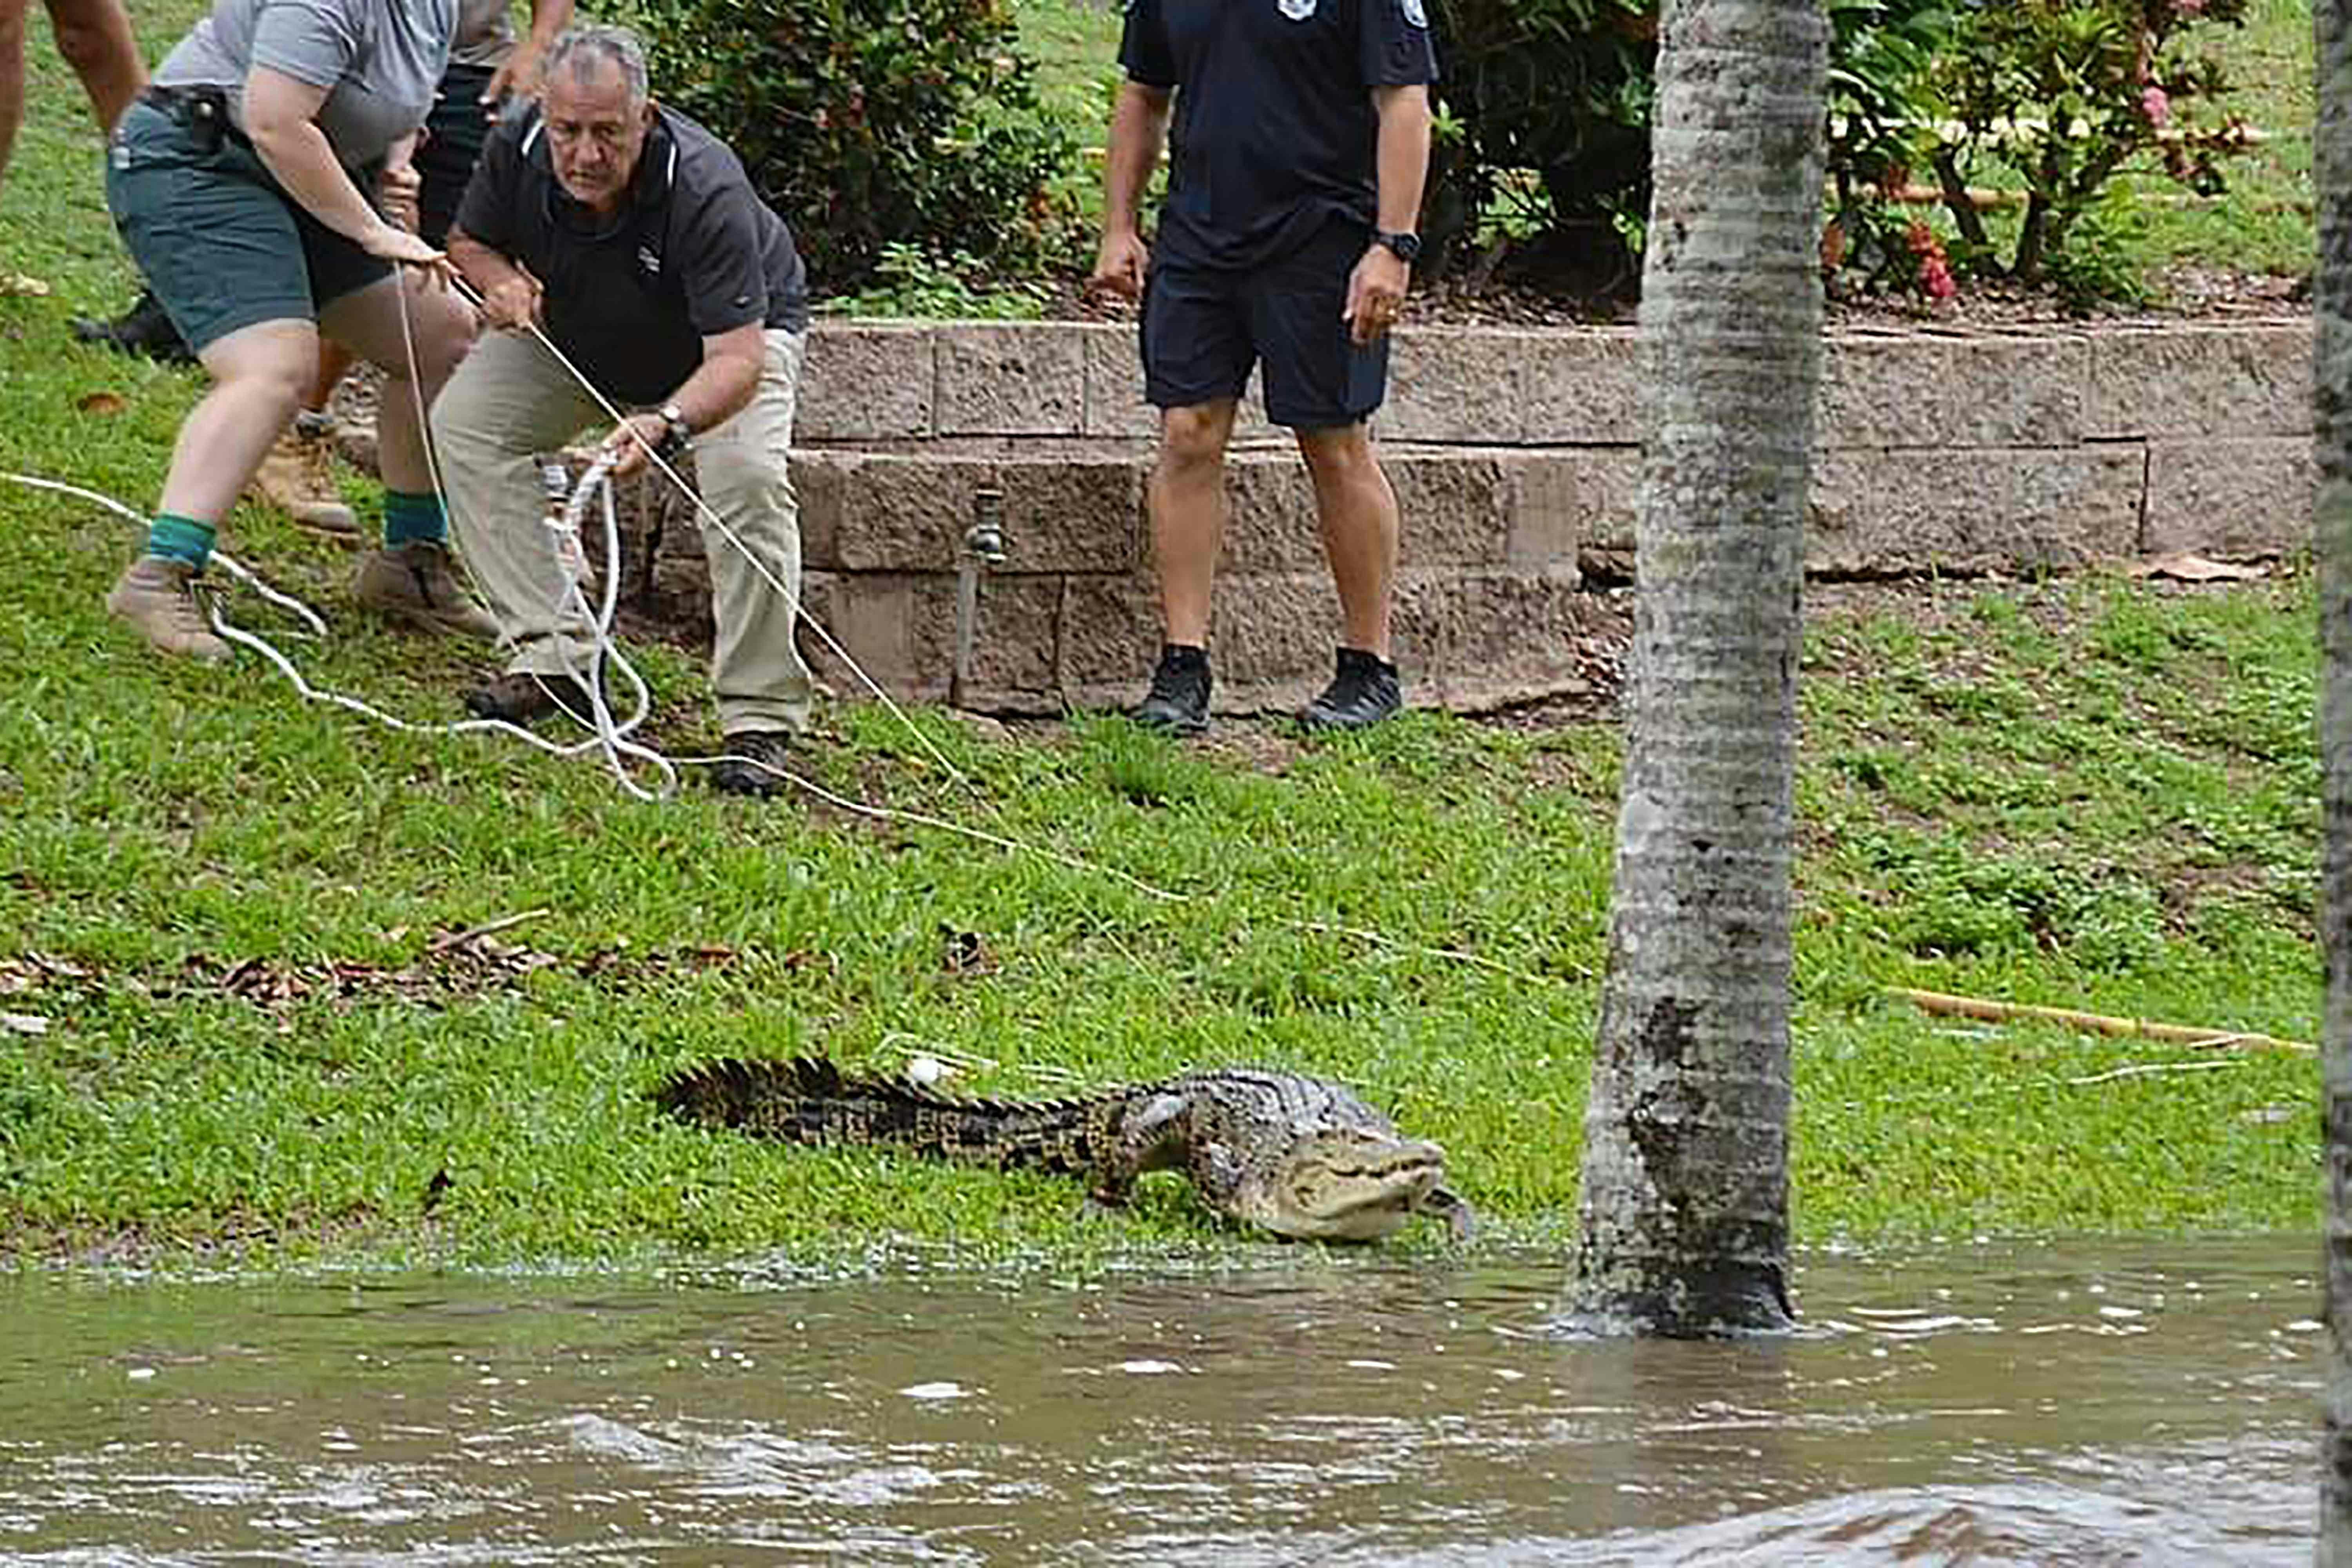 Krokodiller er ifølge lokale myndigheder som følge af voldsomt regnvejr og efterfølgende oversvømmelser "skyllet ind i" byen Ingham i det nordlige Queensland i Australien. 